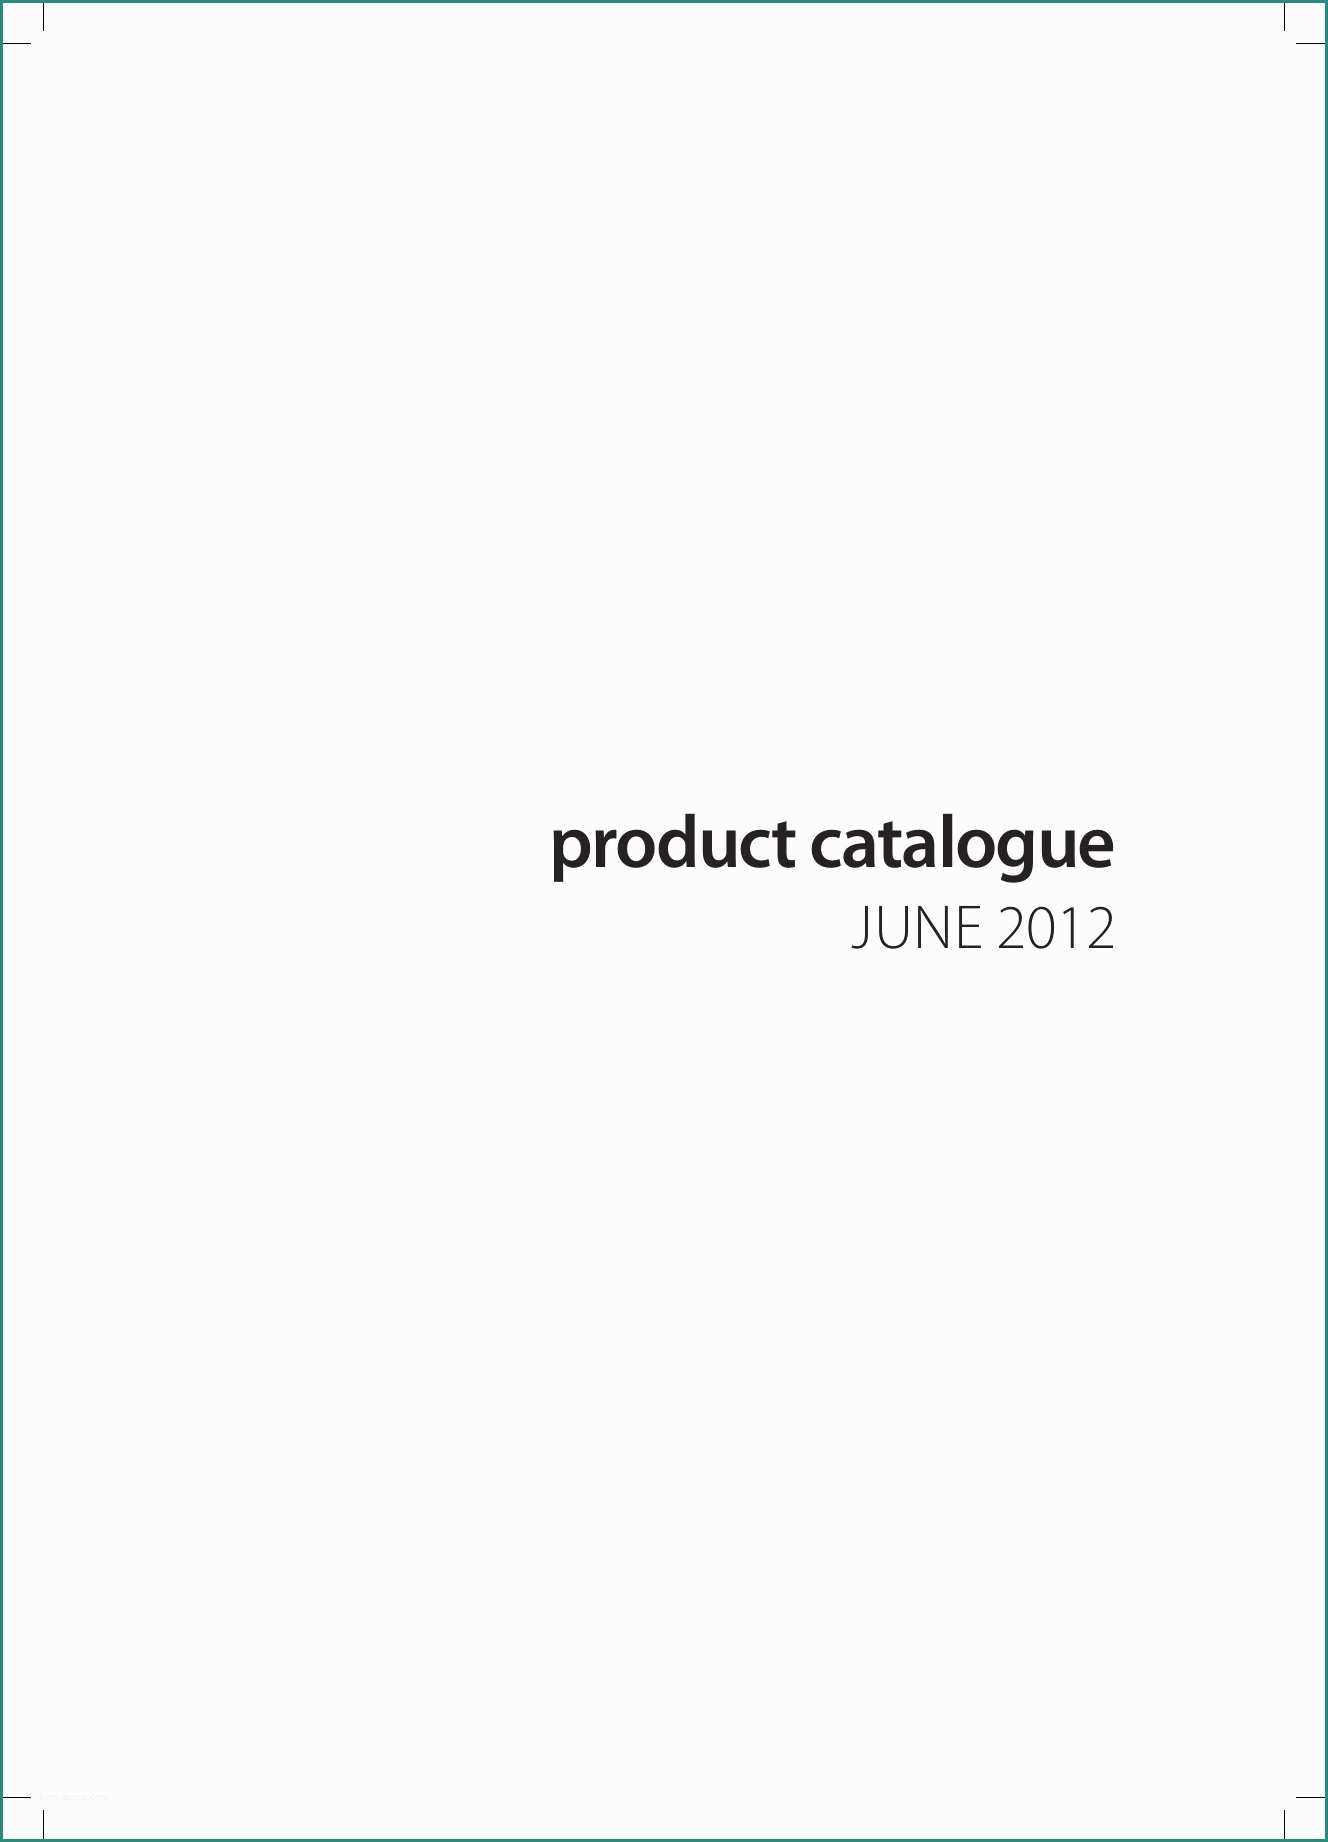 Baxi Eco Compact E Product Catalogue